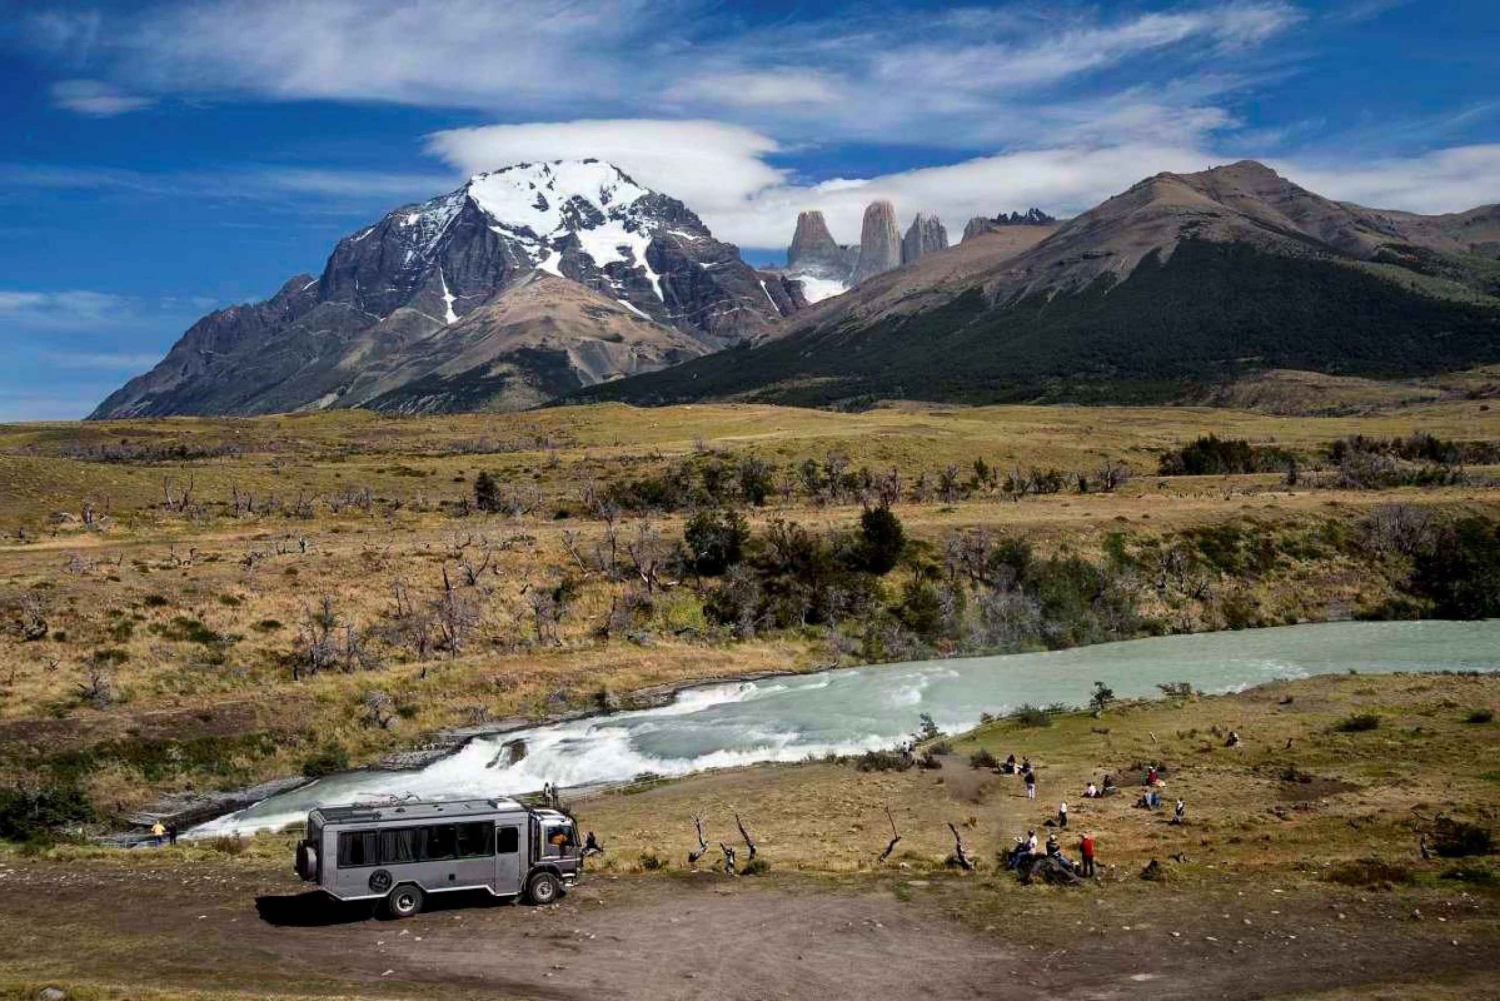 Kokopäiväretki Torres del Painen kansallispuistoon